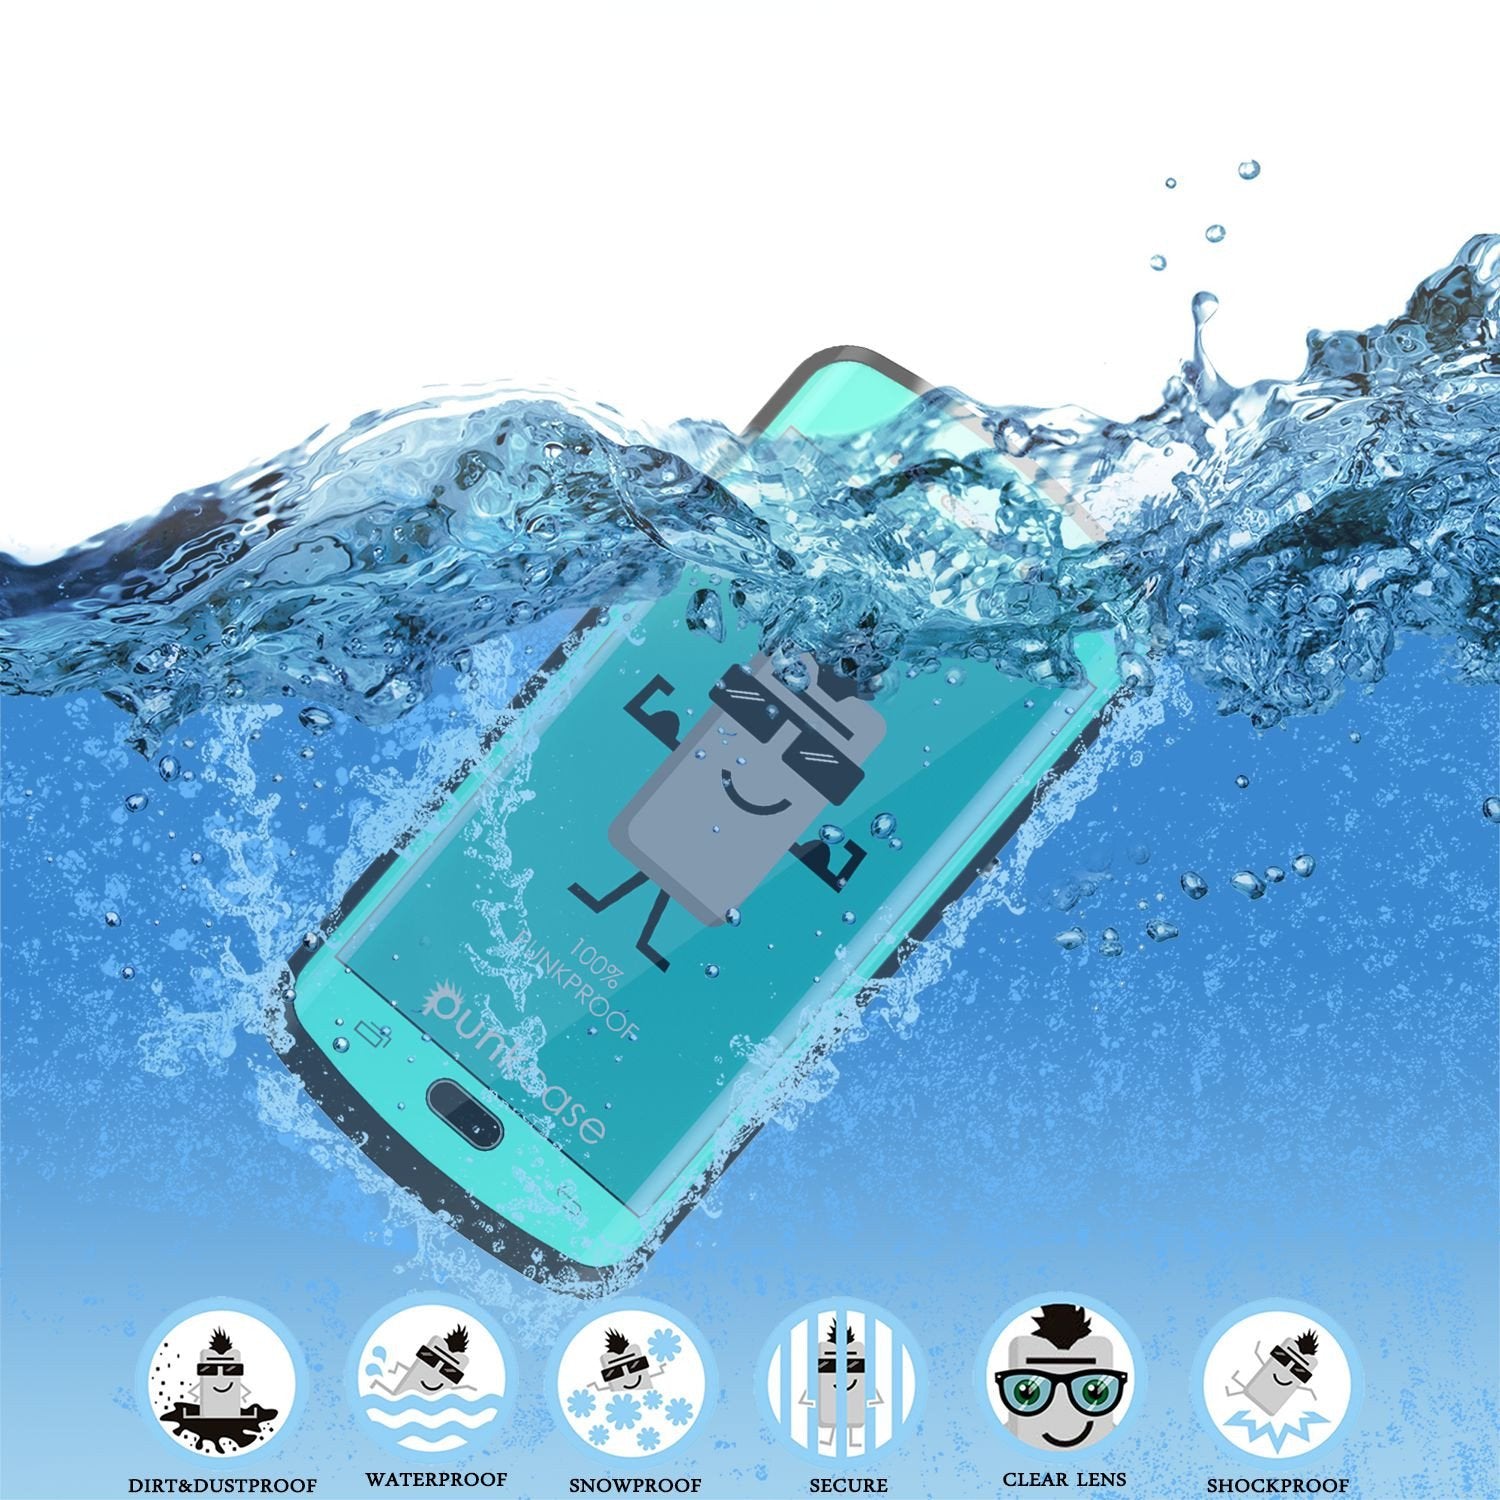 Galaxy s6 EDGE Plus Waterproof Case, Punkcase StudStar Teal Water/Shock Proof | Lifetime Warranty